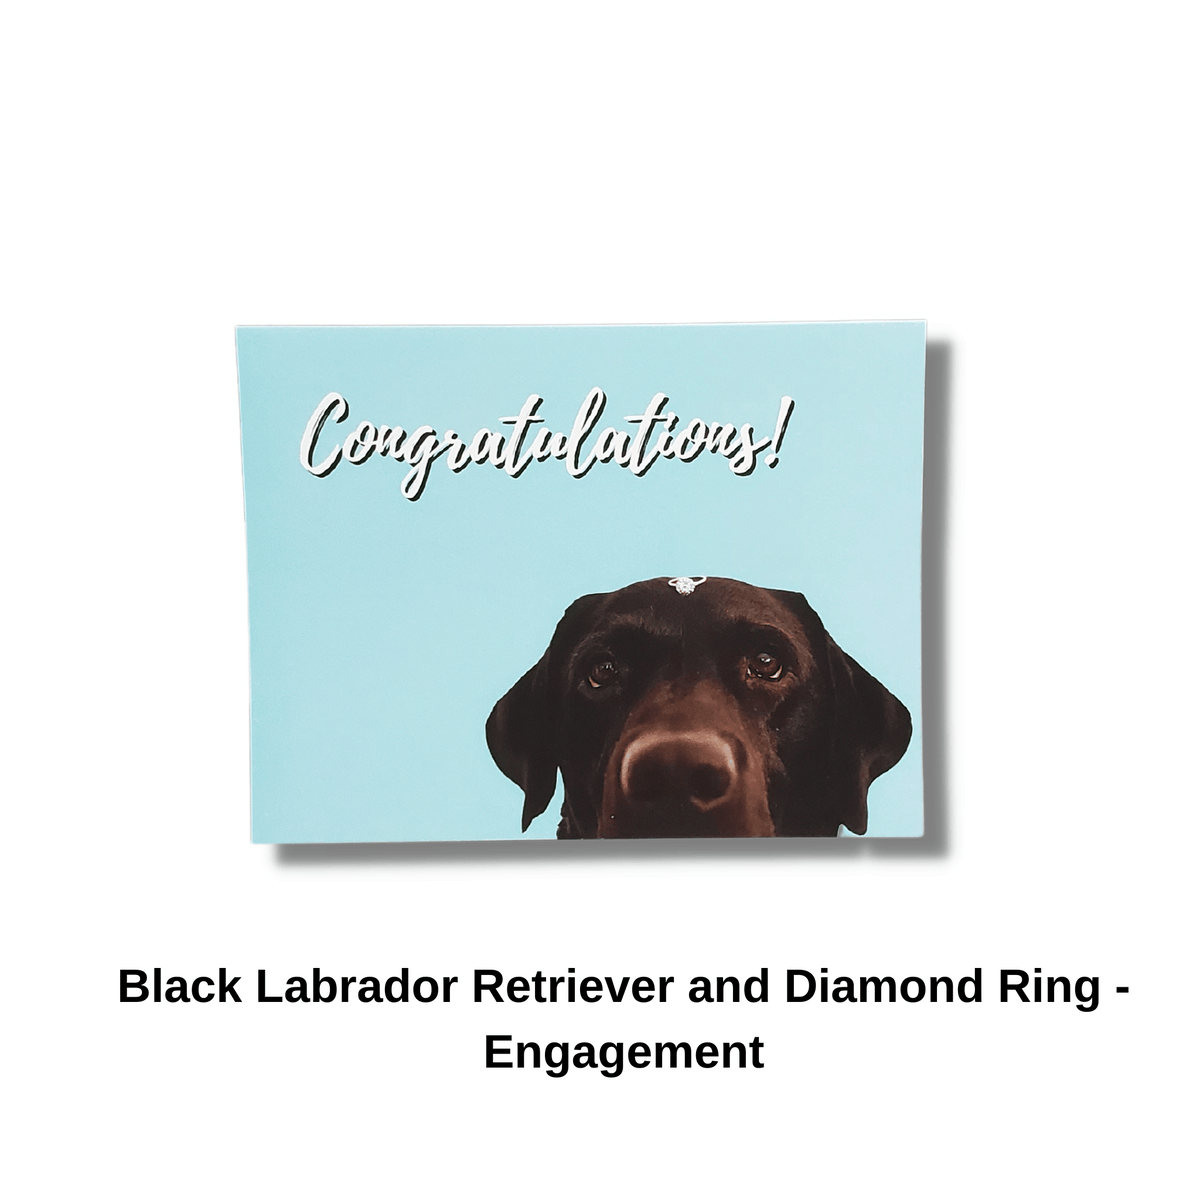 Black Labrador Retriever Engagement Card Pet Greeting Card